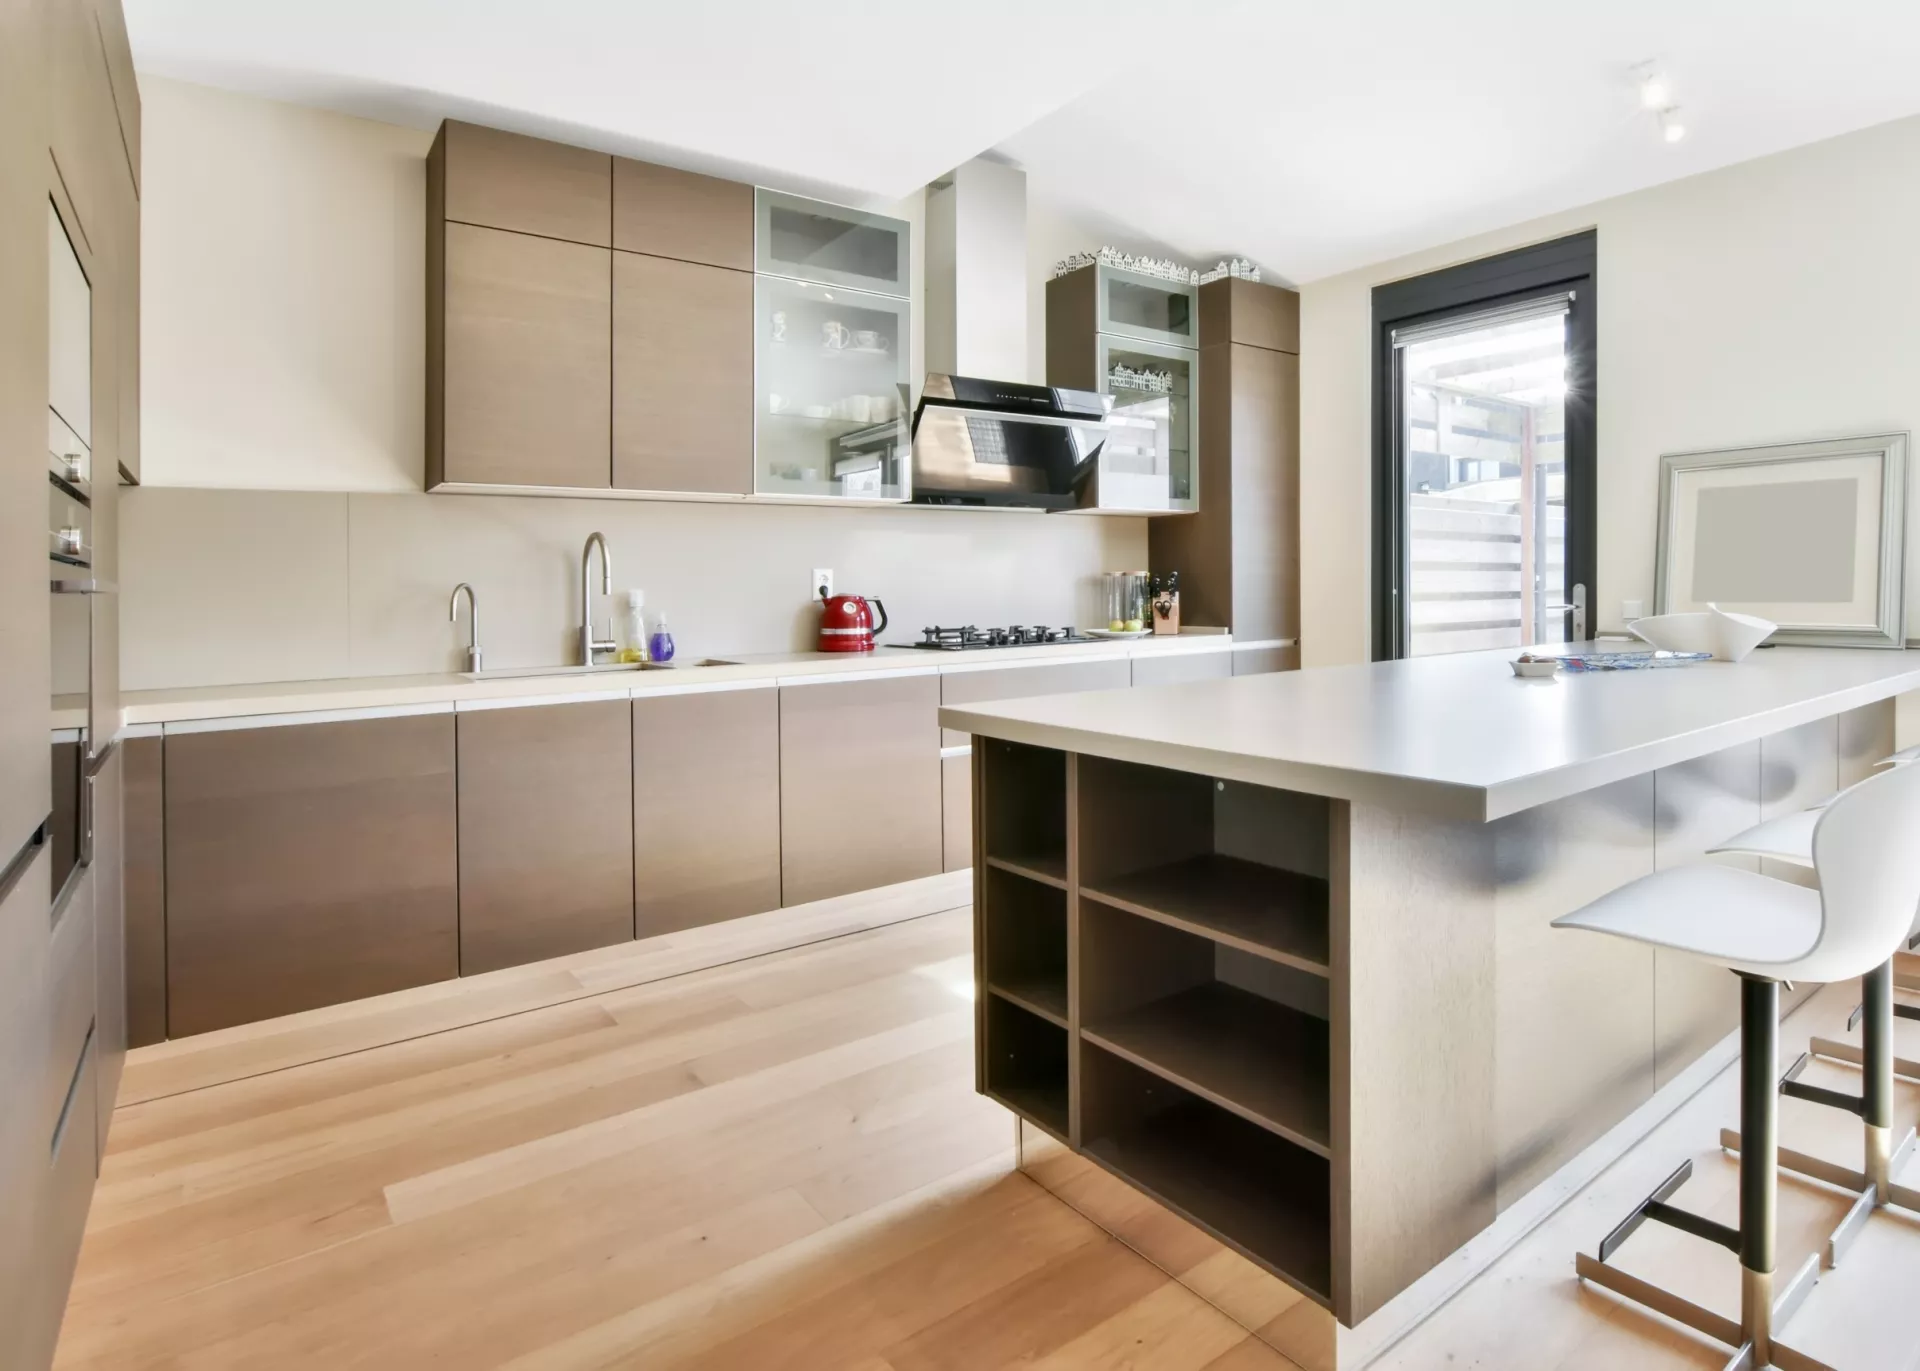 Handless kitchen cabinet design